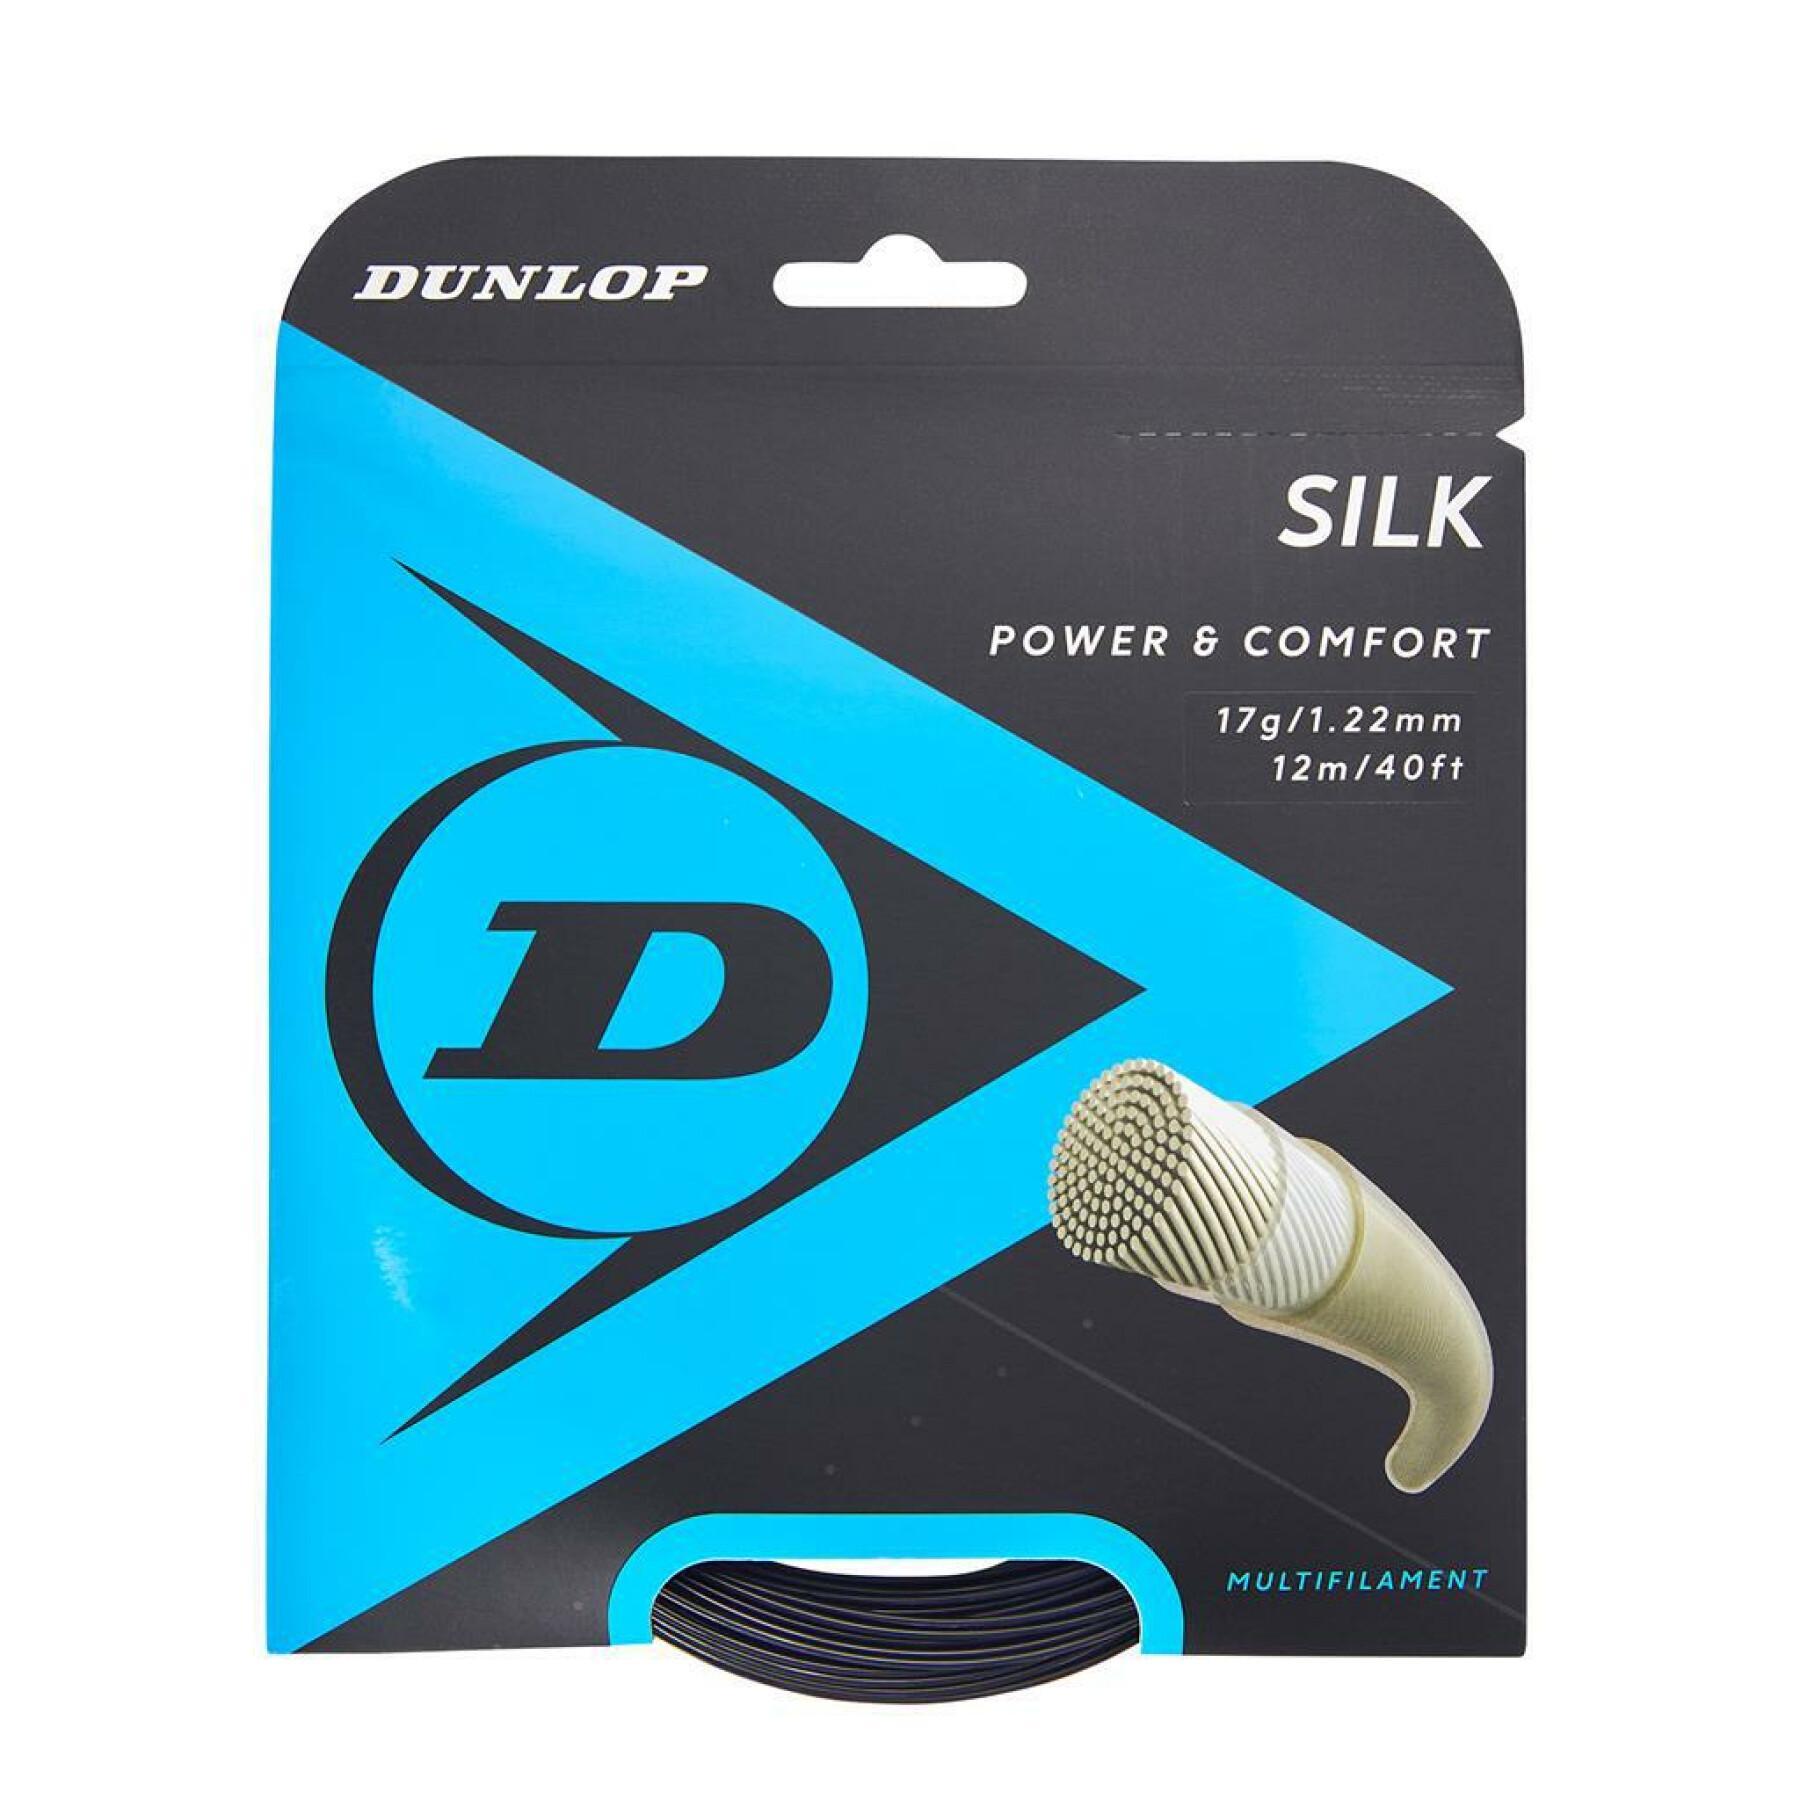 Rep Dunlop silk